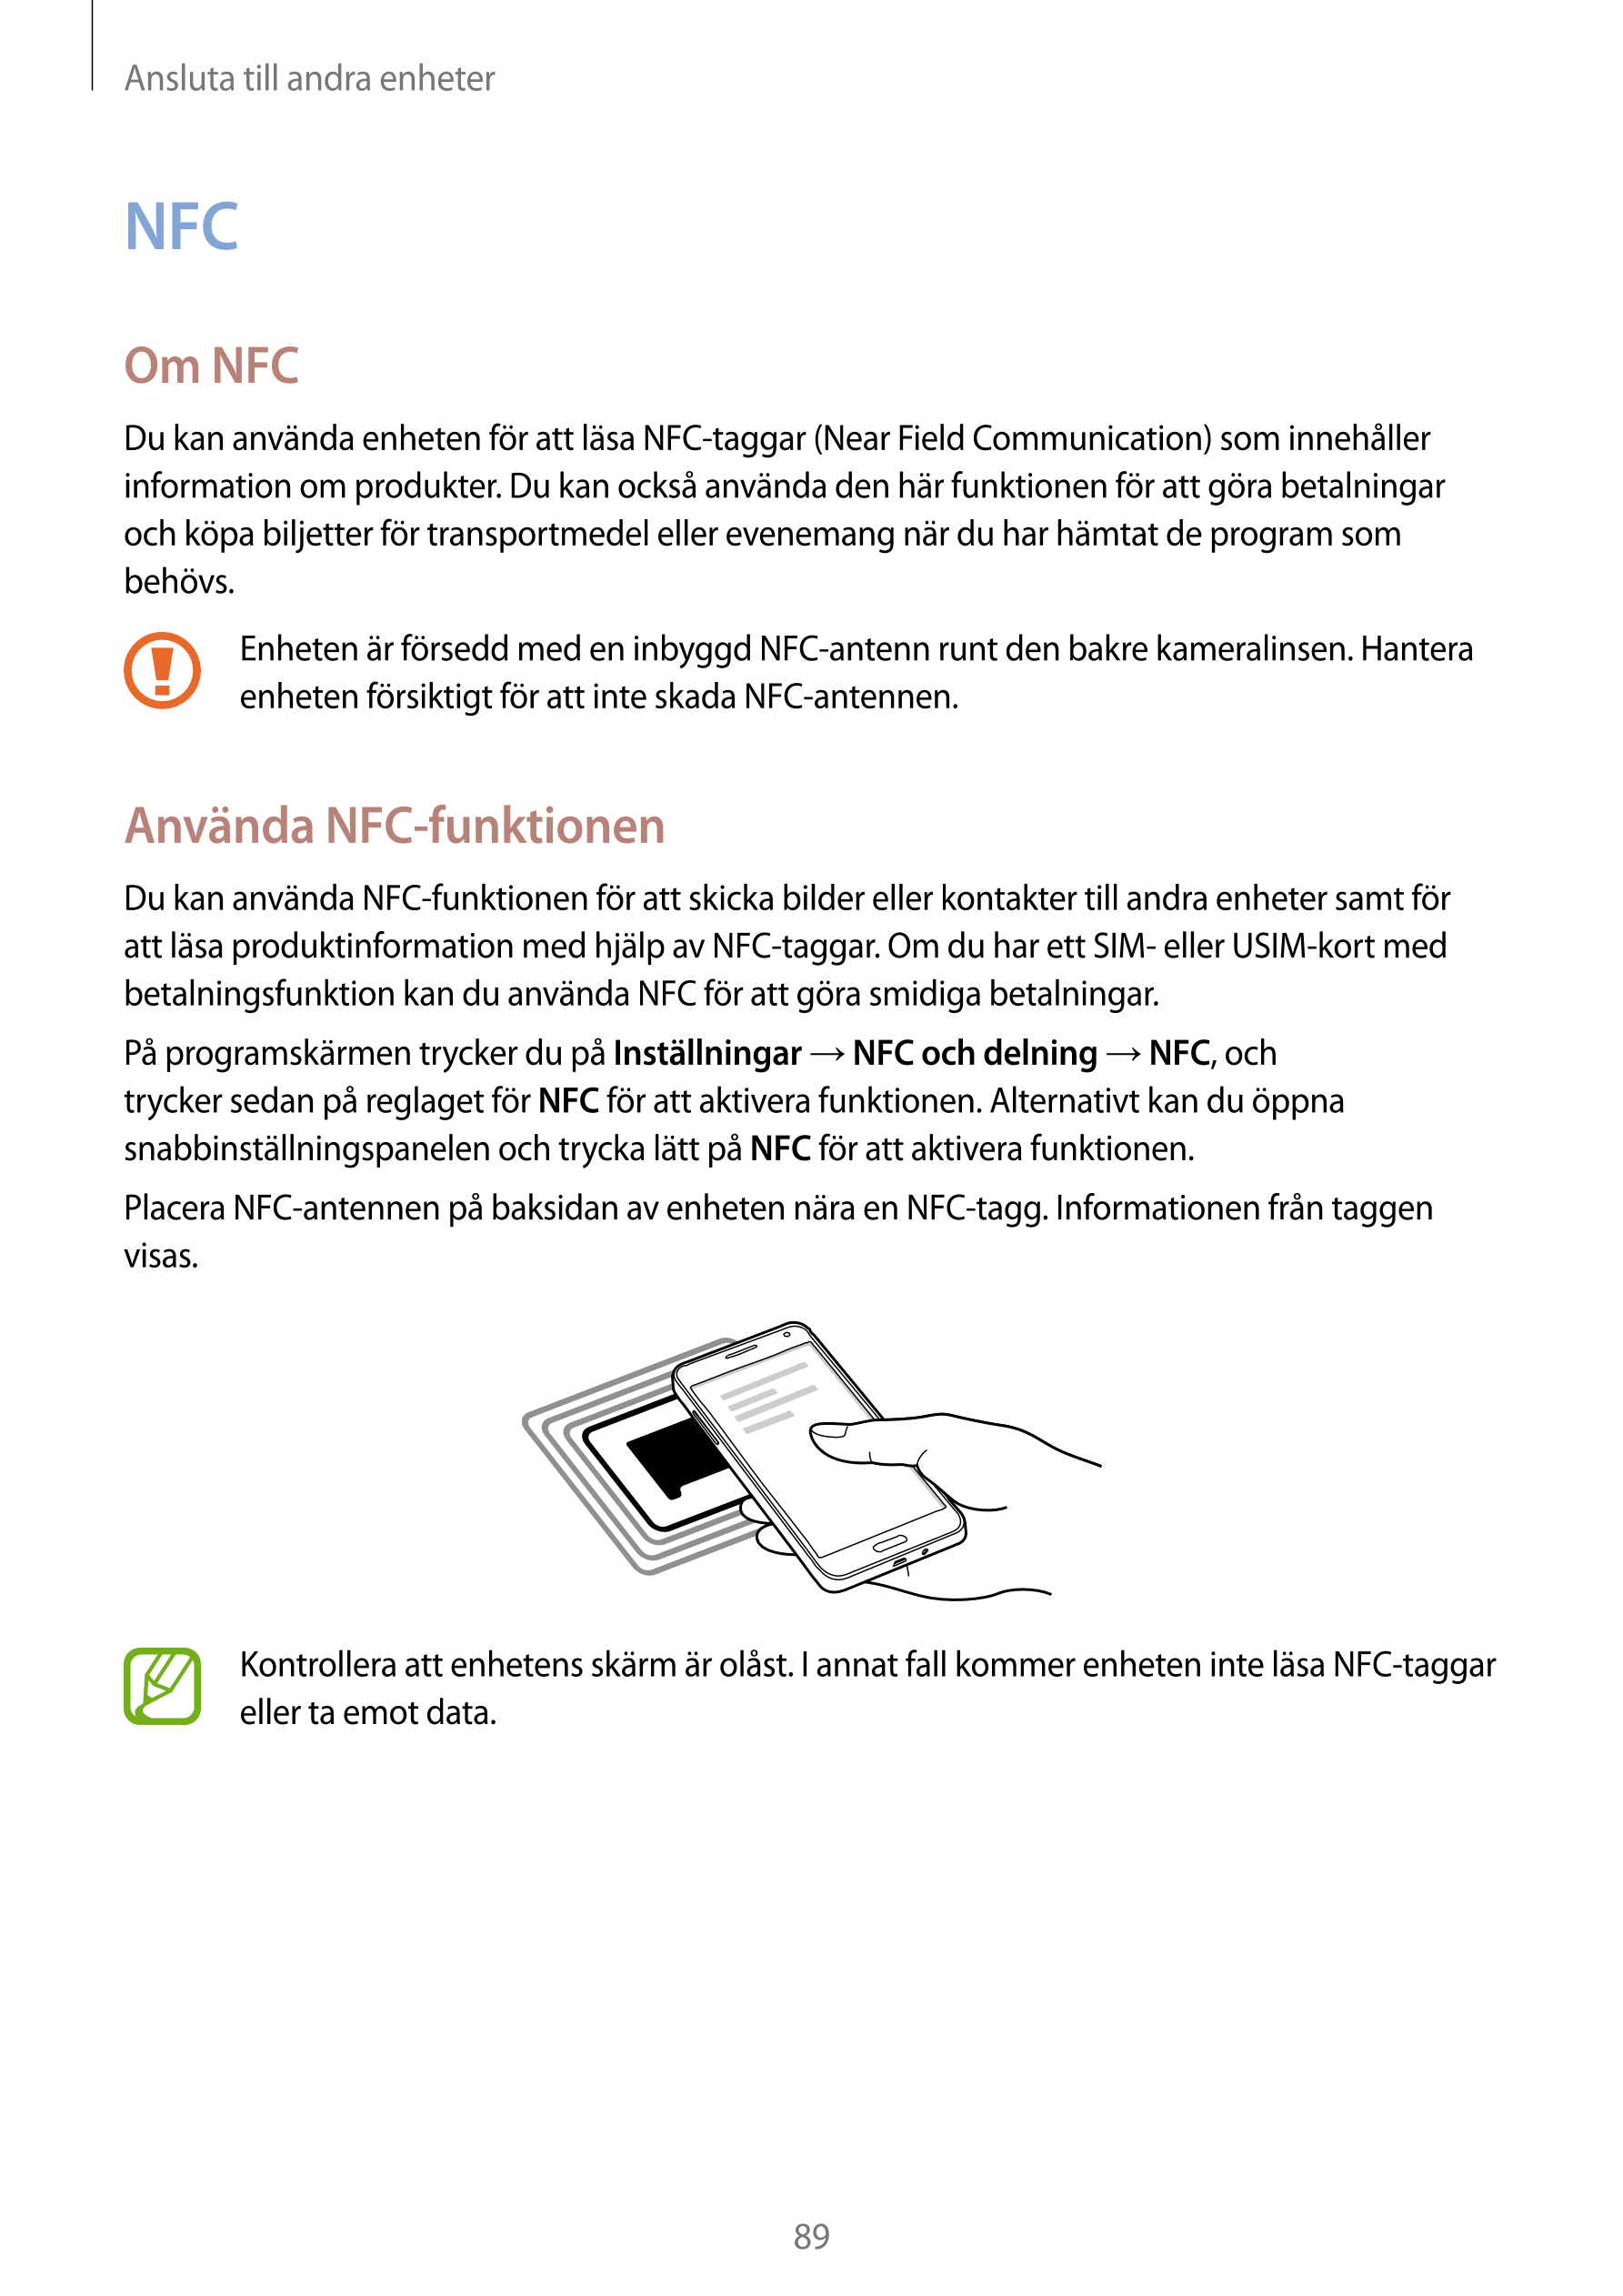 Ansluta till andra enheter
NFC
Om NFC
Du kan använda enheten för att läsa NFC-taggar (Near Field Communication) som innehåller 
